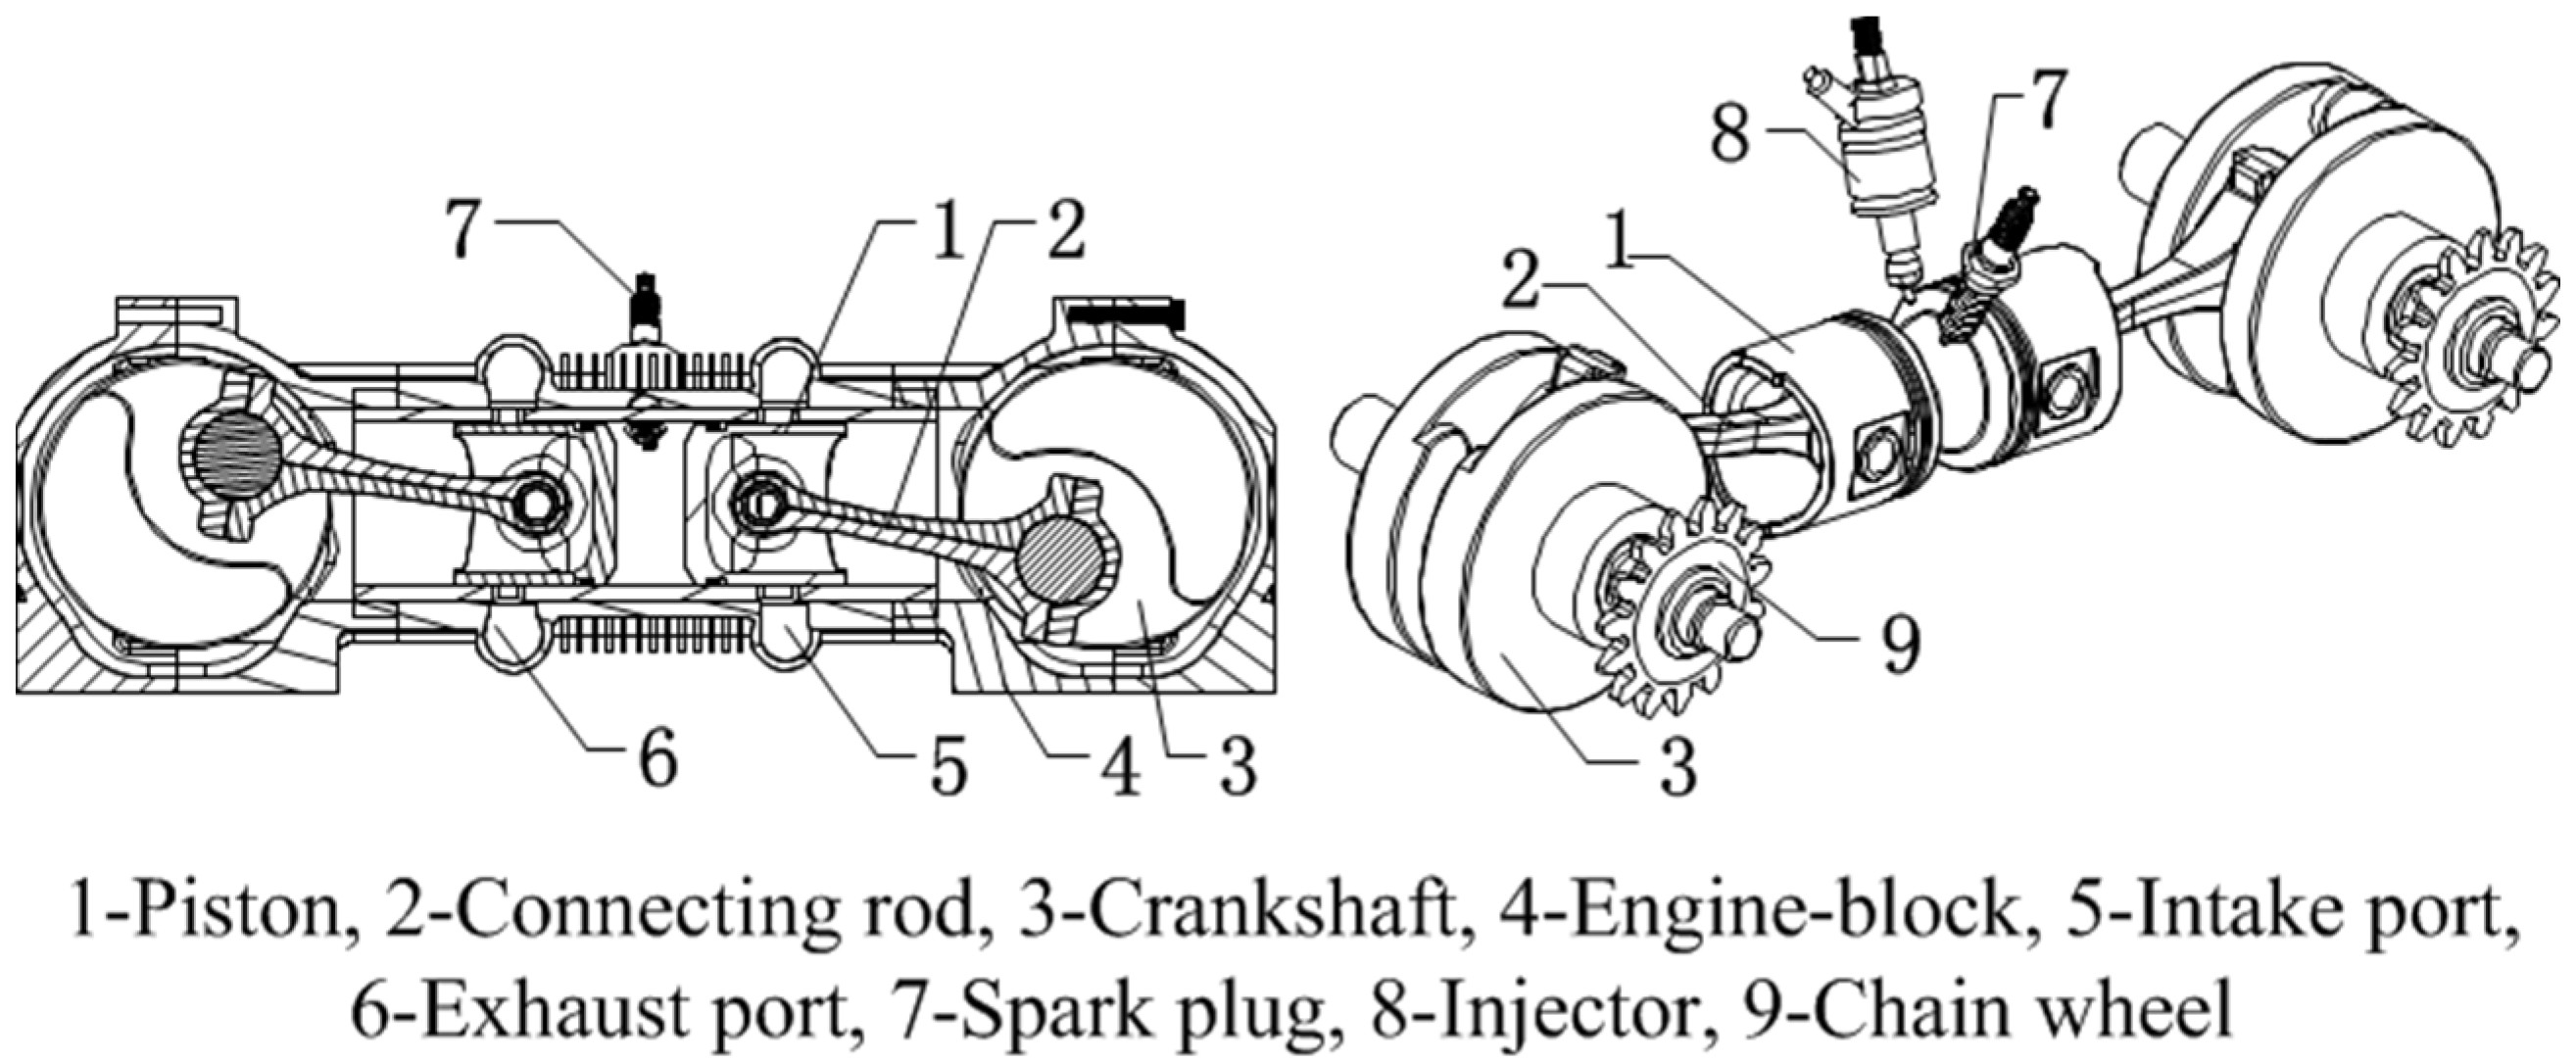 Engine Piston Diagram Energies Free Full Text